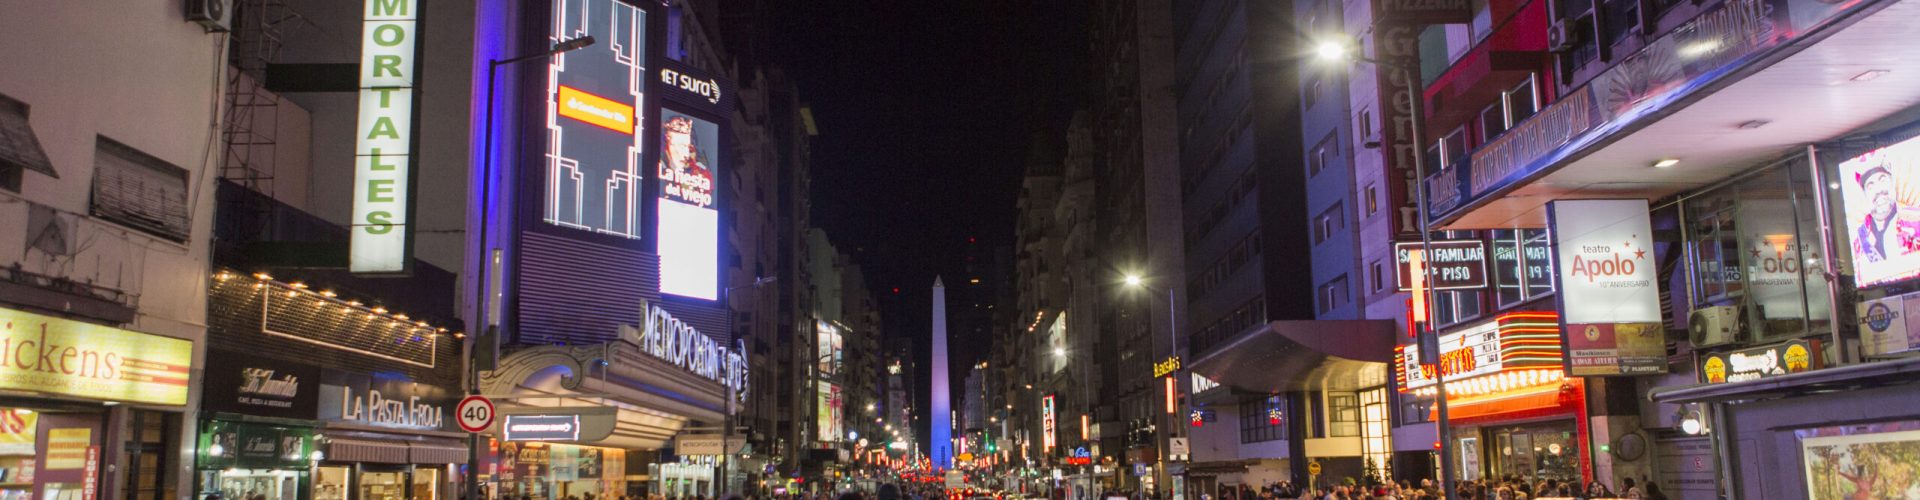 Noche de Calle Corrientes con gente caminando por la calle hecha peatonal, de fondo el obelisco iluminado de menara muy atractiva, Ciudad de Buenos Aires